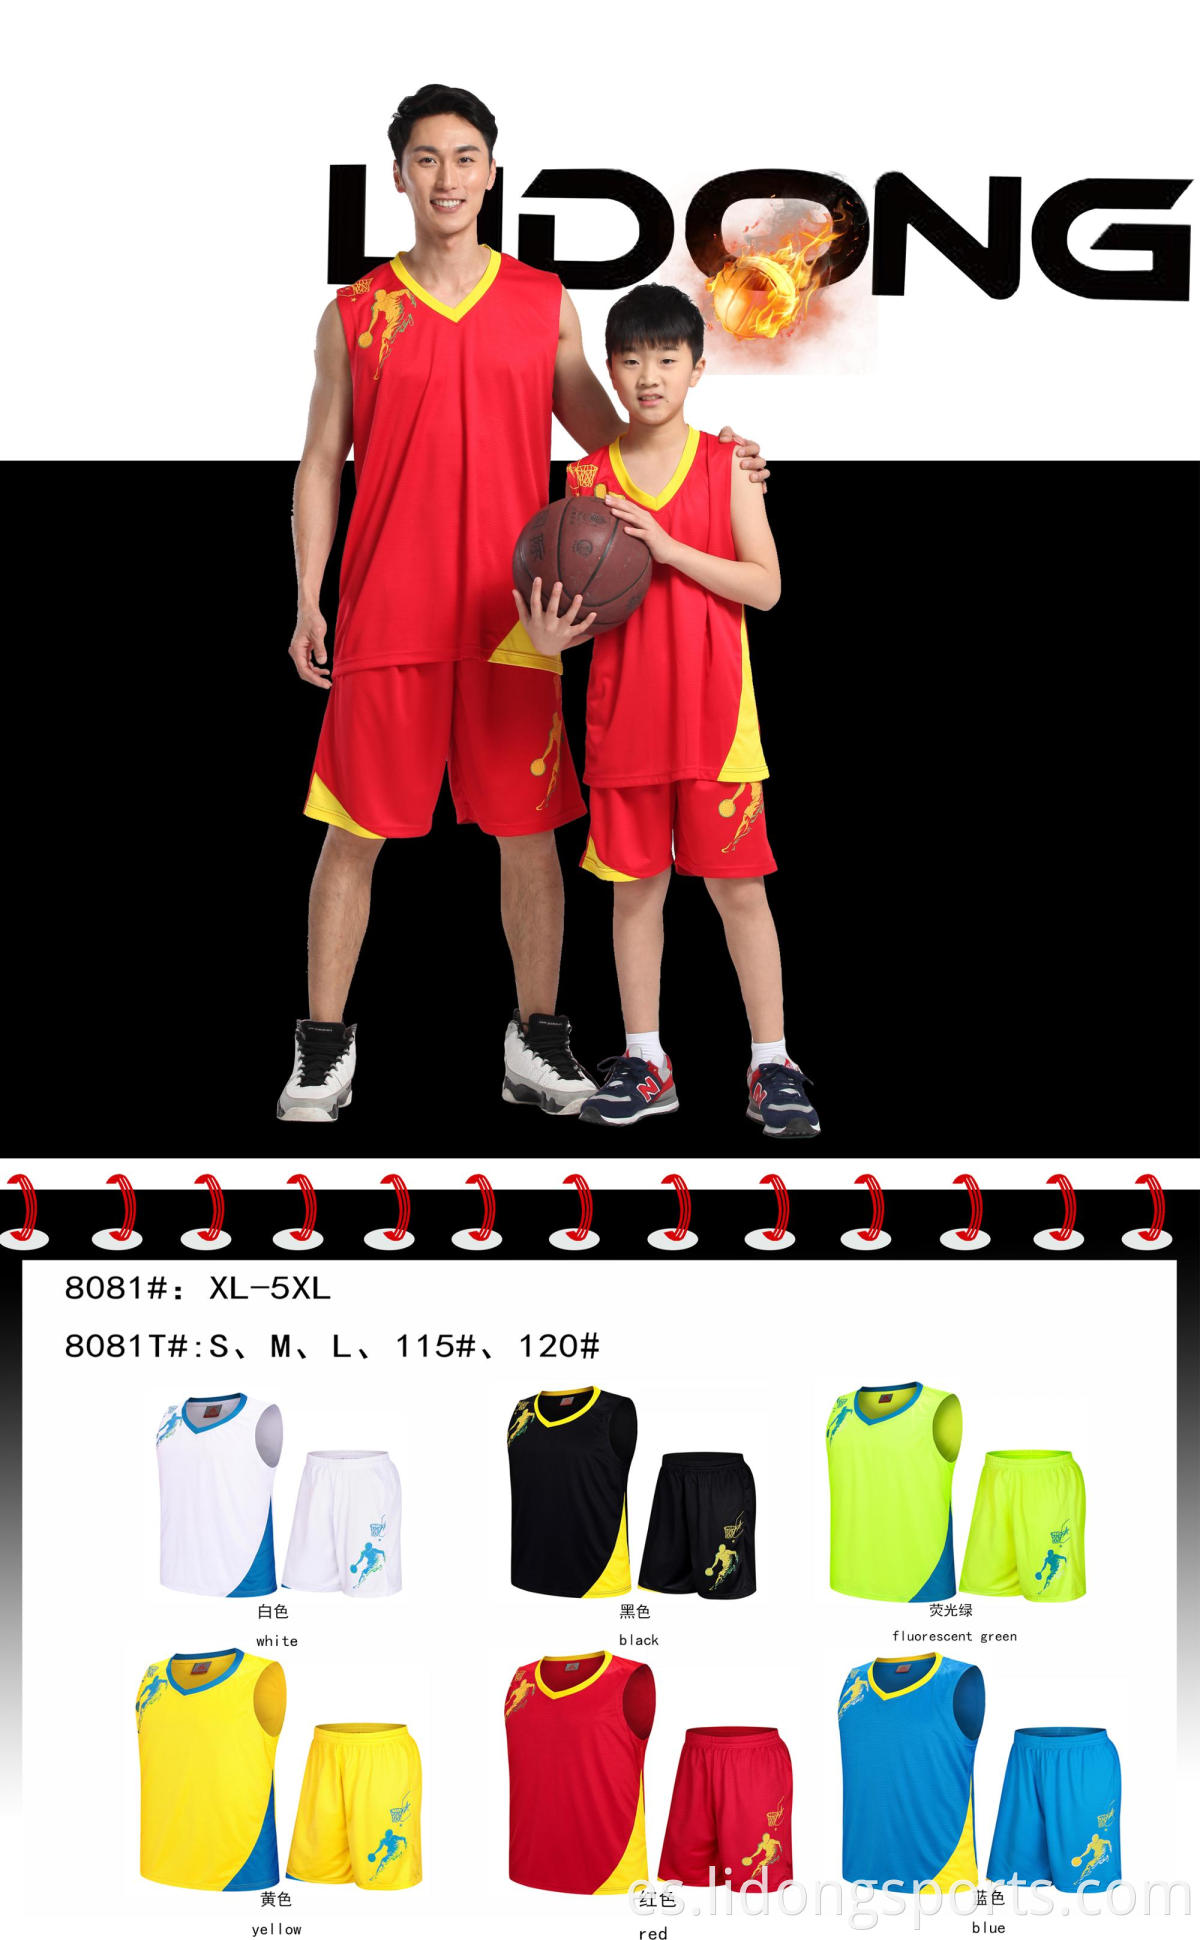 Nuevo unisex personalizados para niños y uniformes de baloncesto para adultos